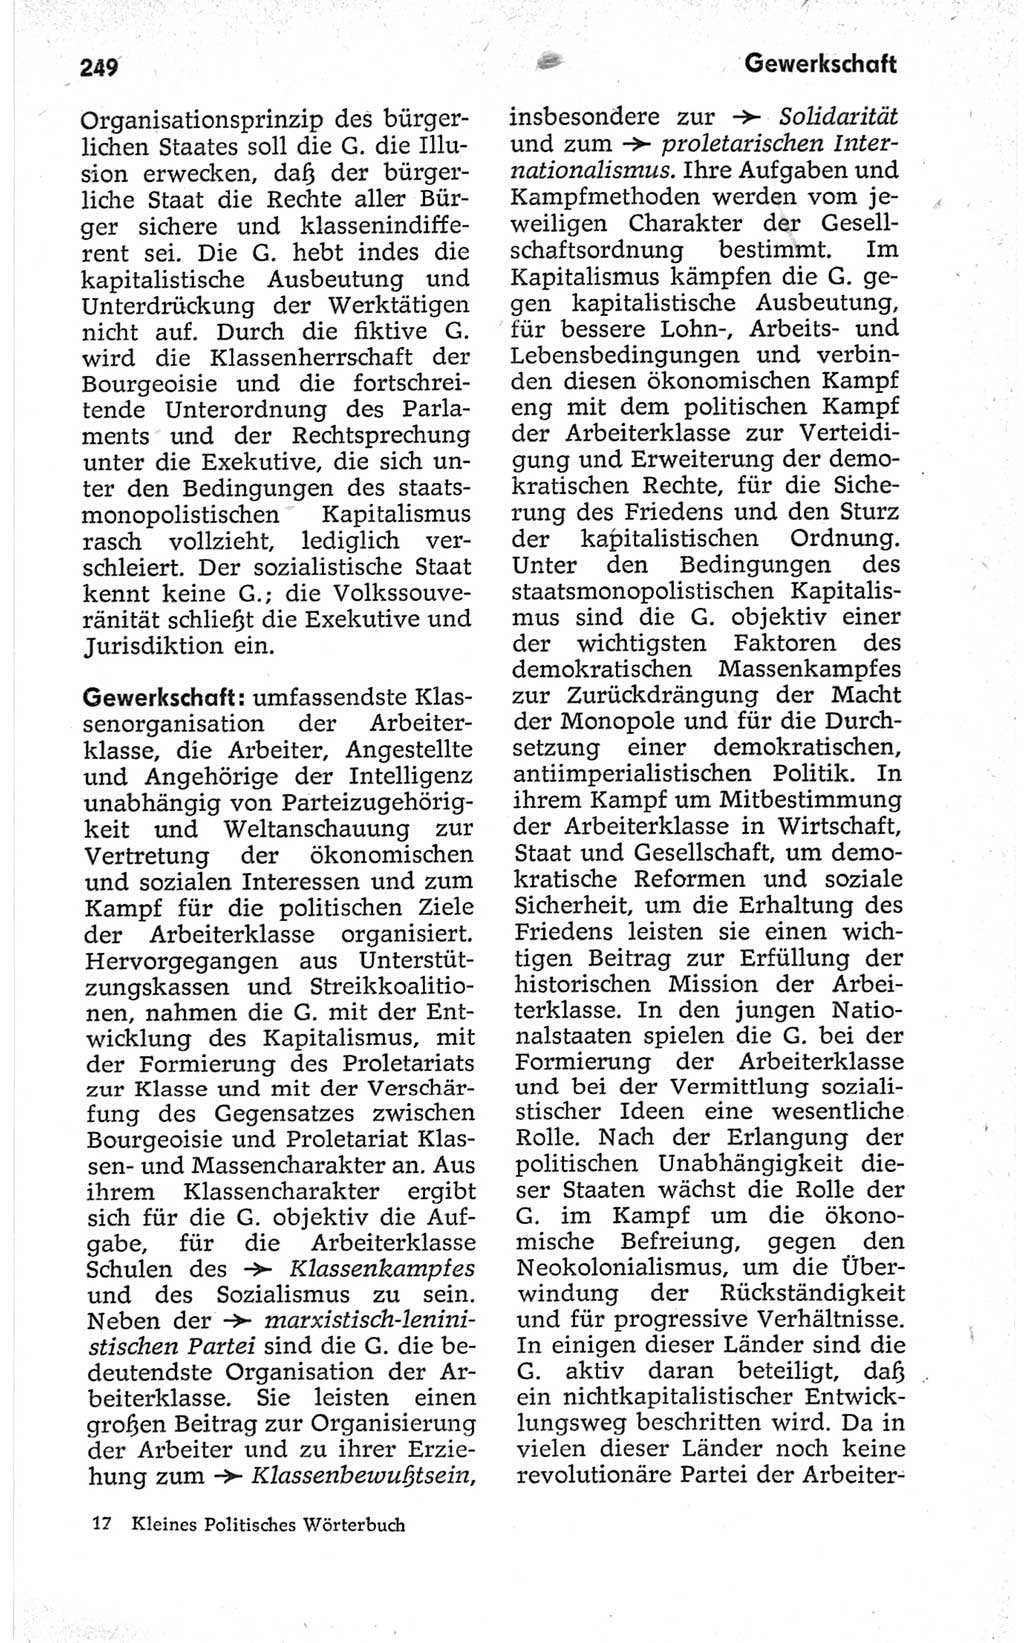 Kleines politisches Wörterbuch [Deutsche Demokratische Republik (DDR)] 1967, Seite 249 (Kl. pol. Wb. DDR 1967, S. 249)